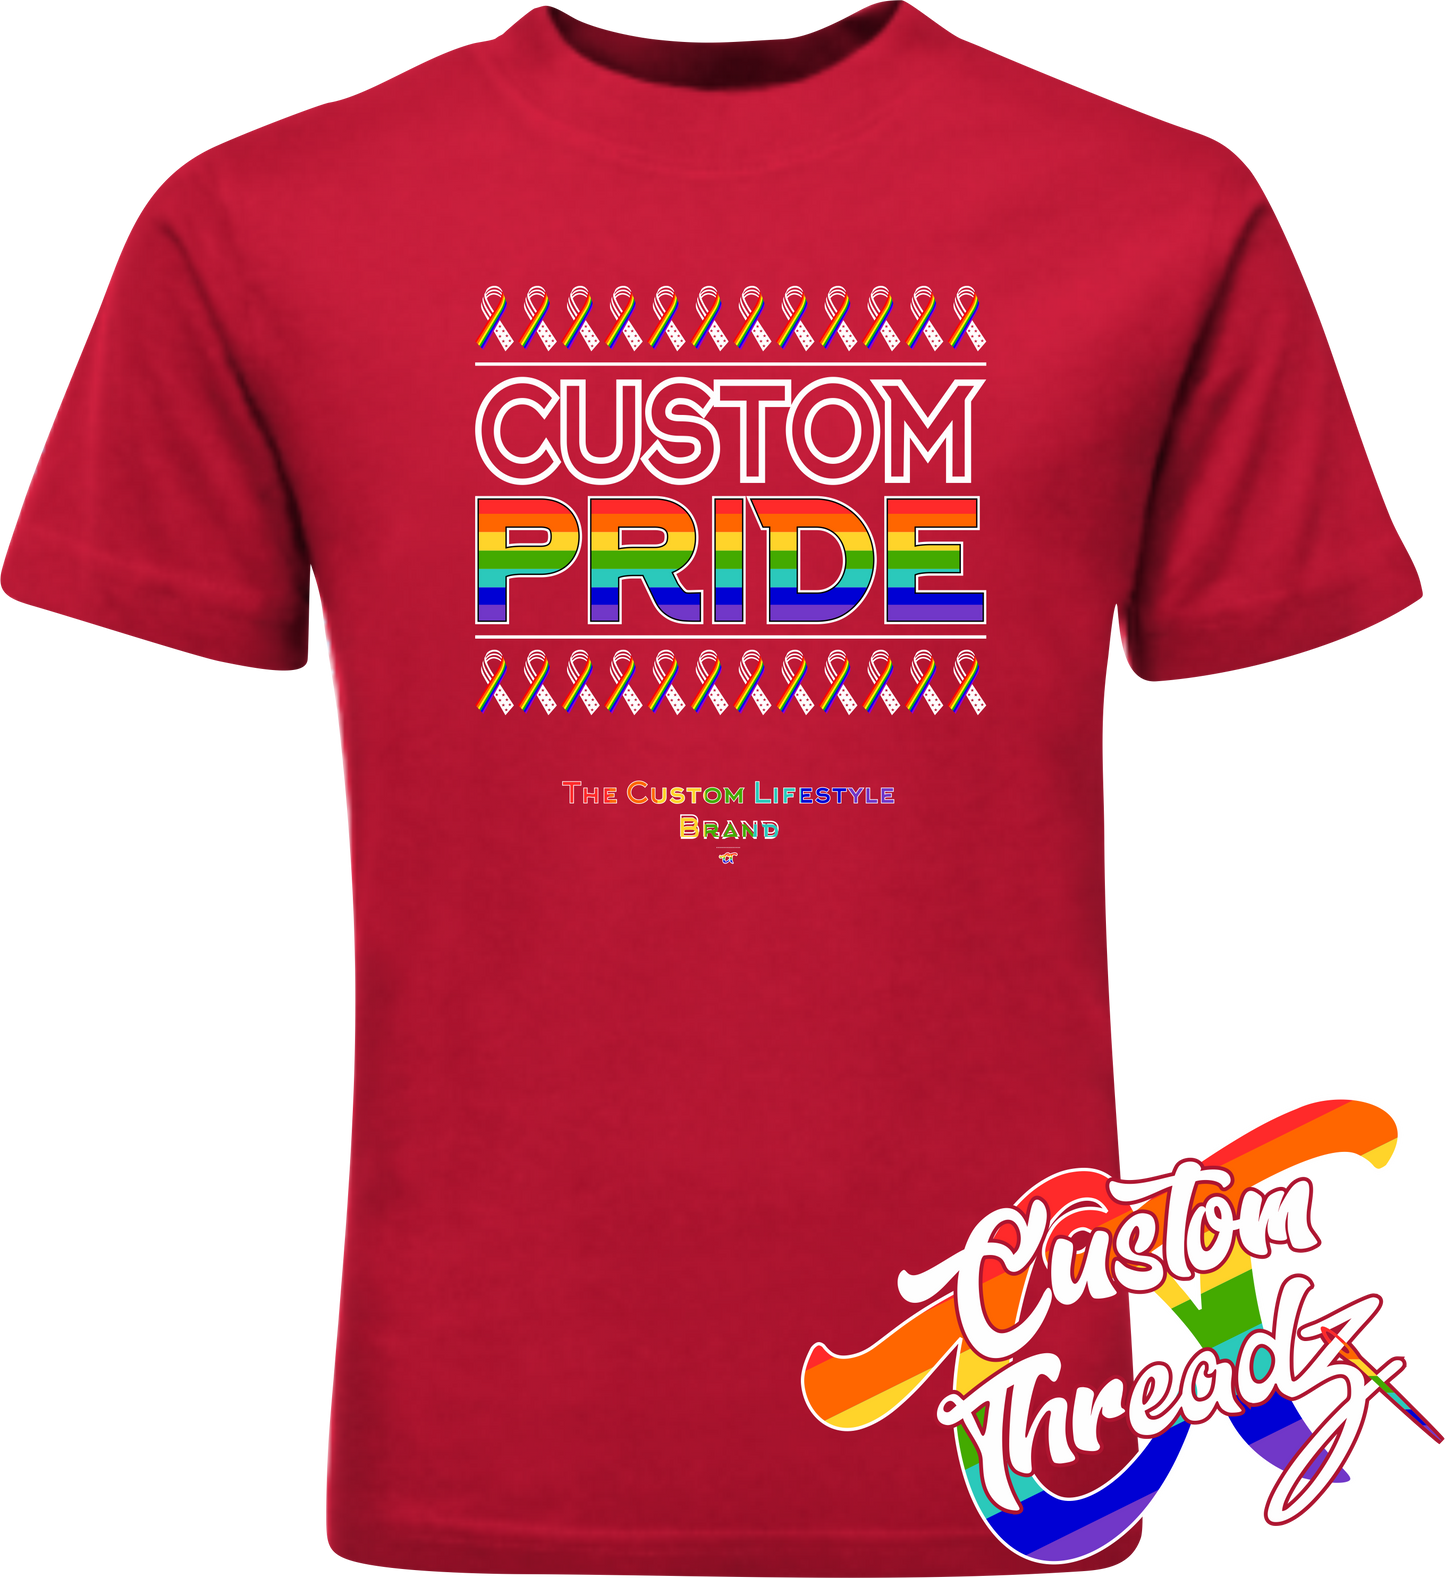 red tee with custom pride rainbow pride flag DTG printed design